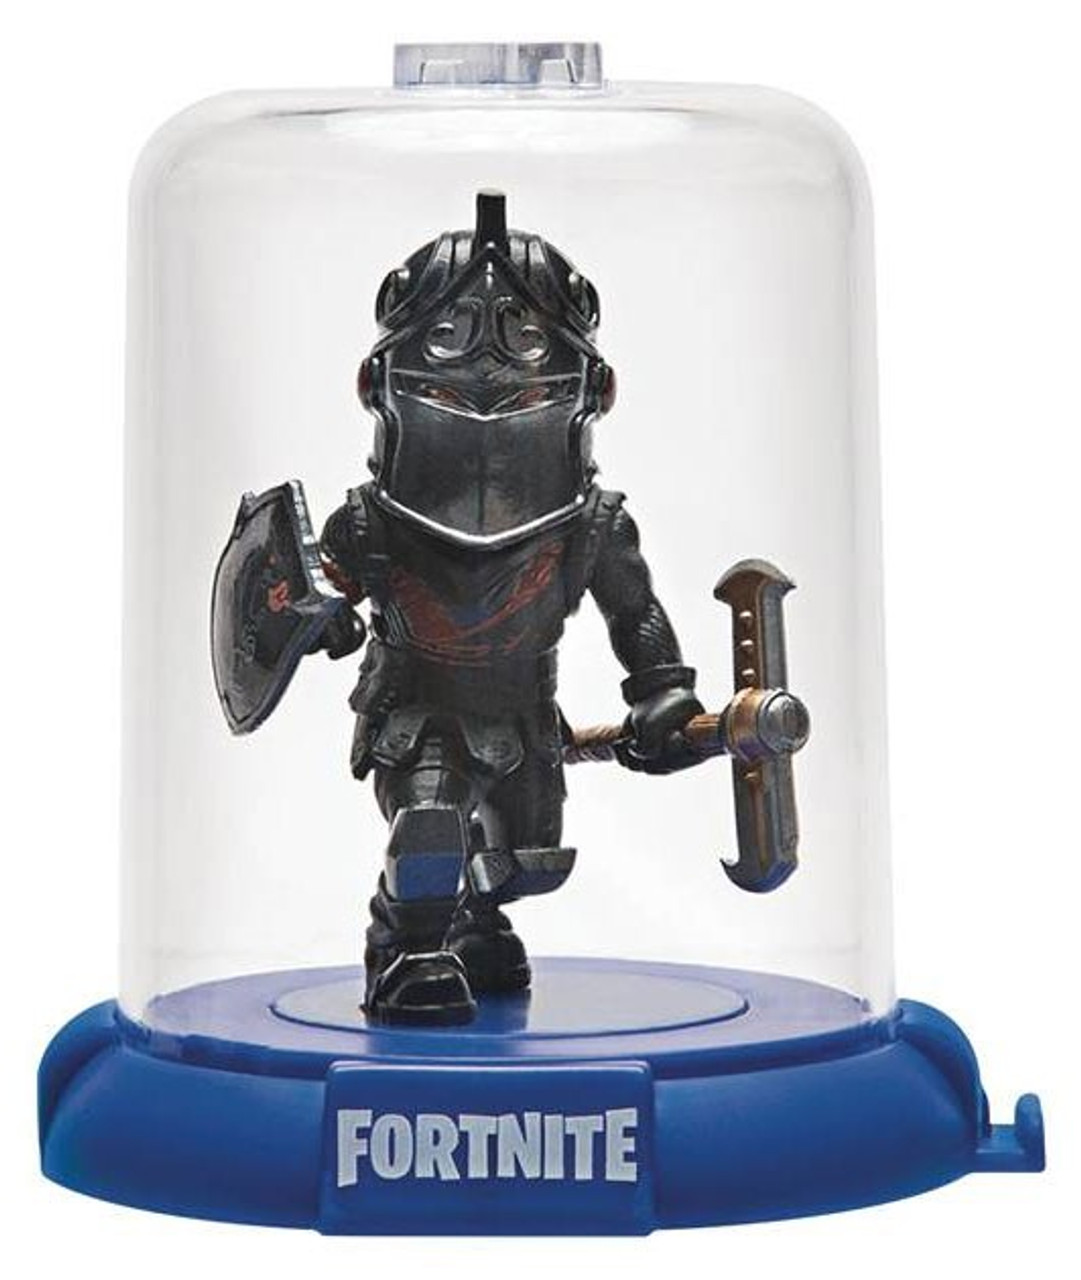 black knight fortnite toy